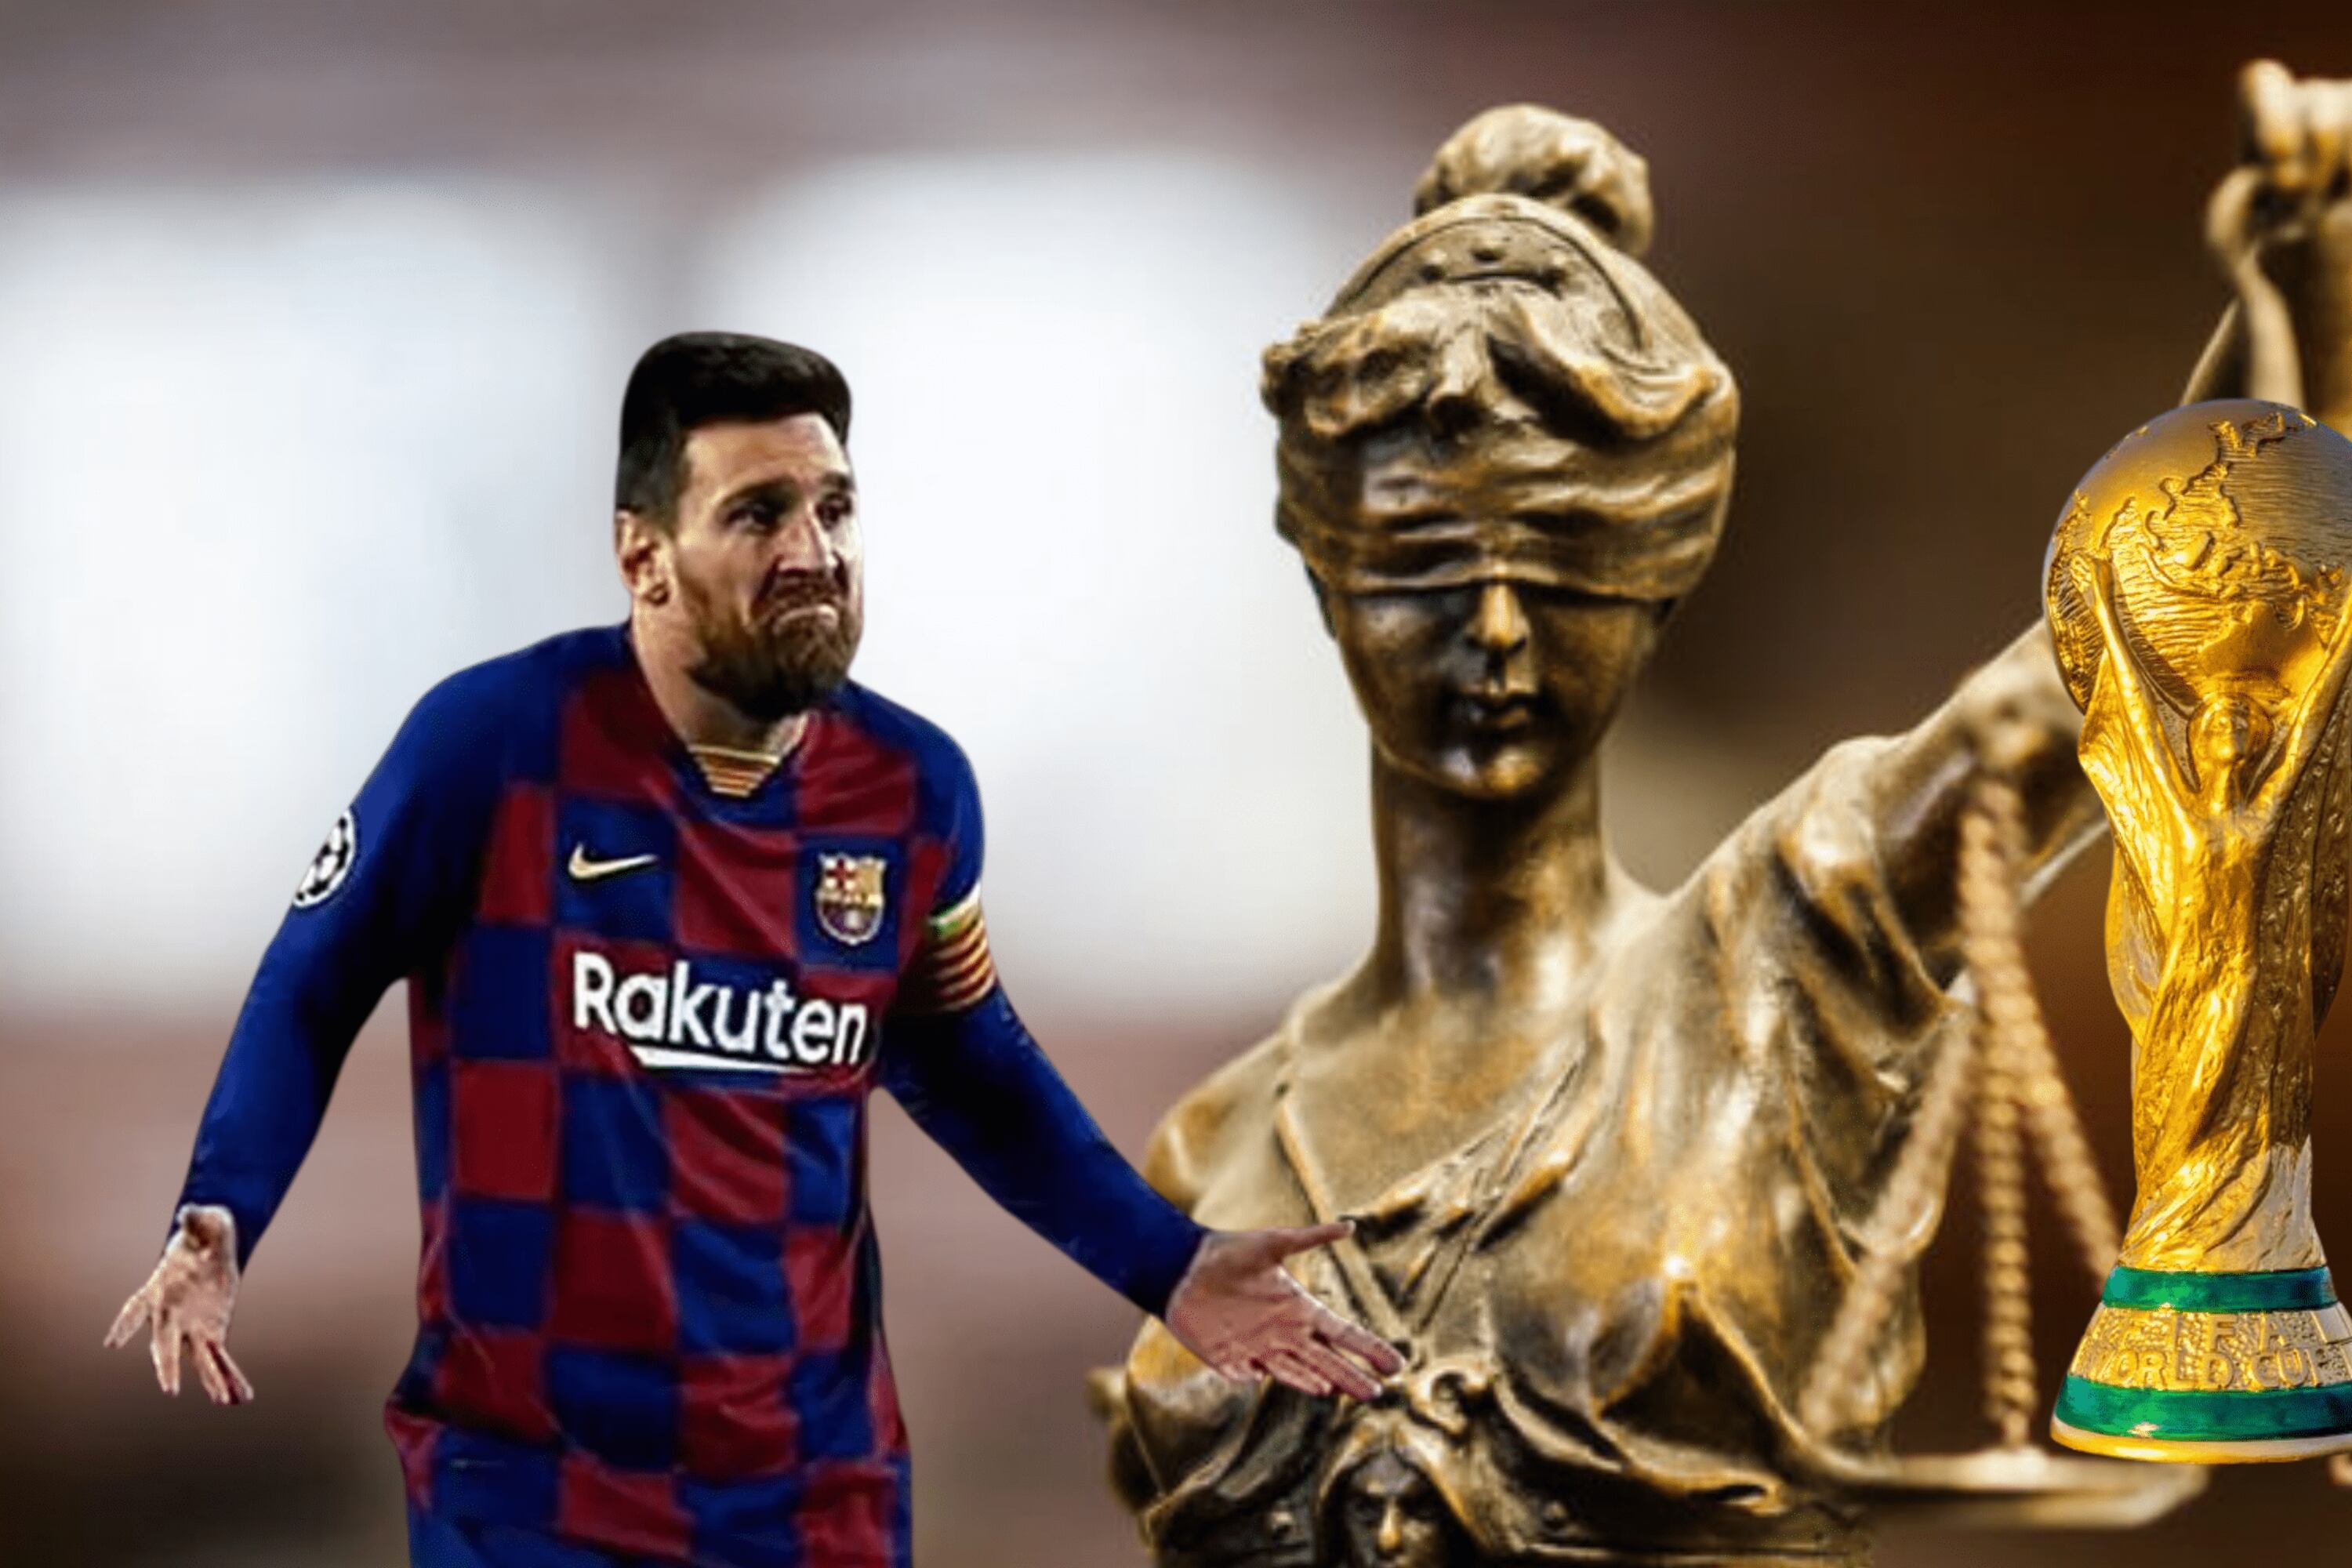 Fue campeón del mundo y Messi lo humilló, ahora va a paro y la justicia lo persigue